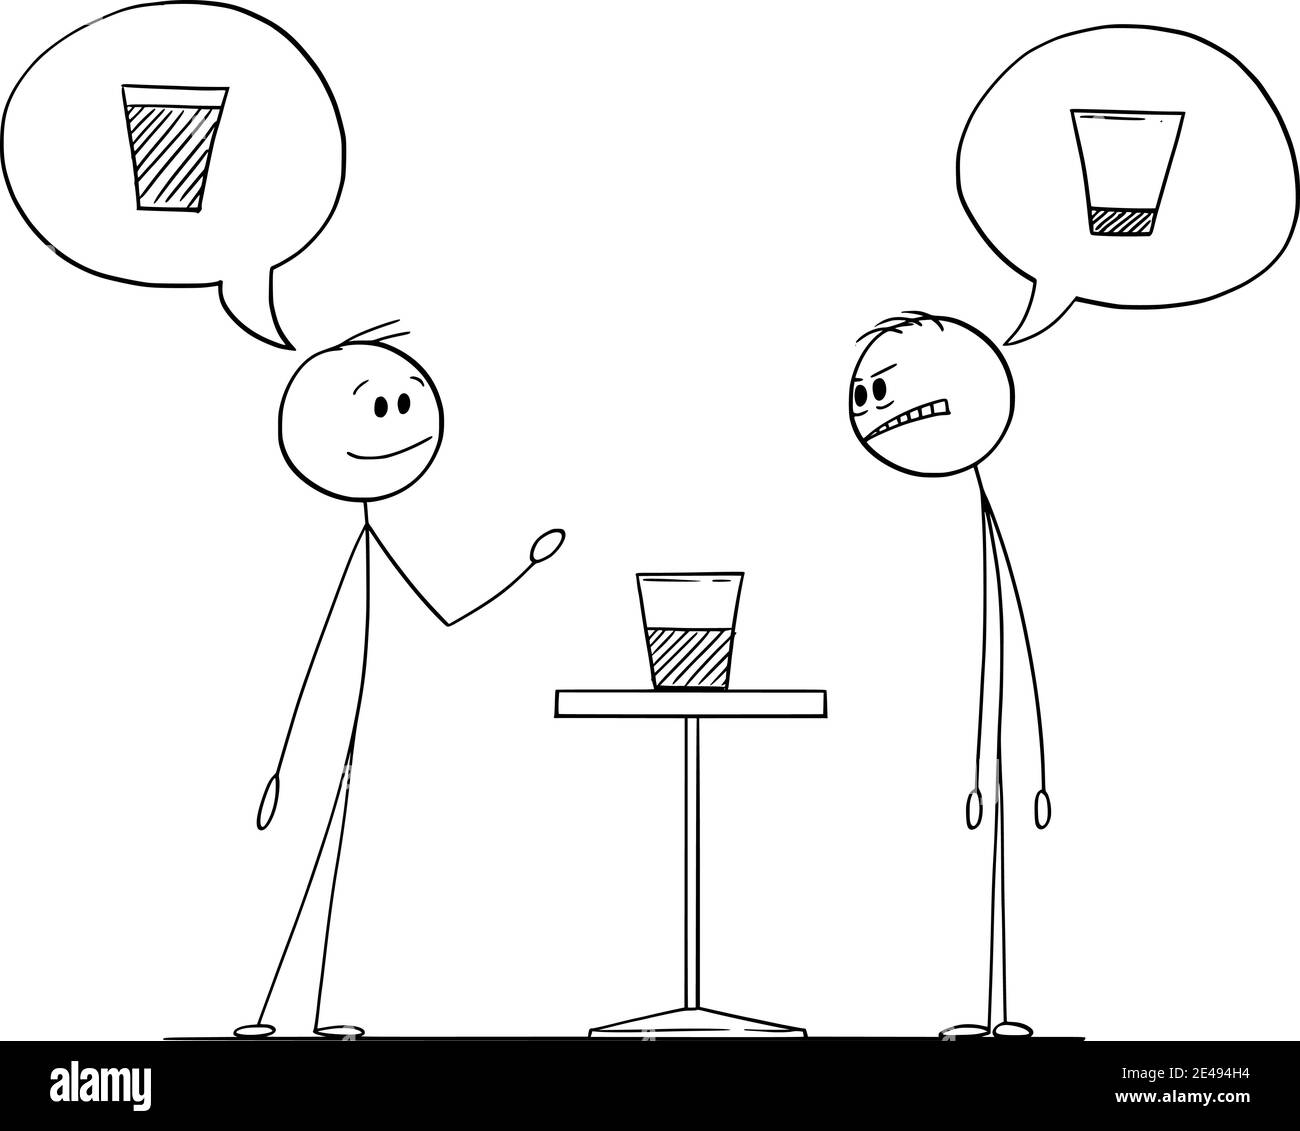 Zwei Männer sind Bedeutung, wenn das Glas mit Wasser ist halb voll oder halb leer, Vektor-Cartoon-Stick Figur oder Figur Illustration. Stock Vektor